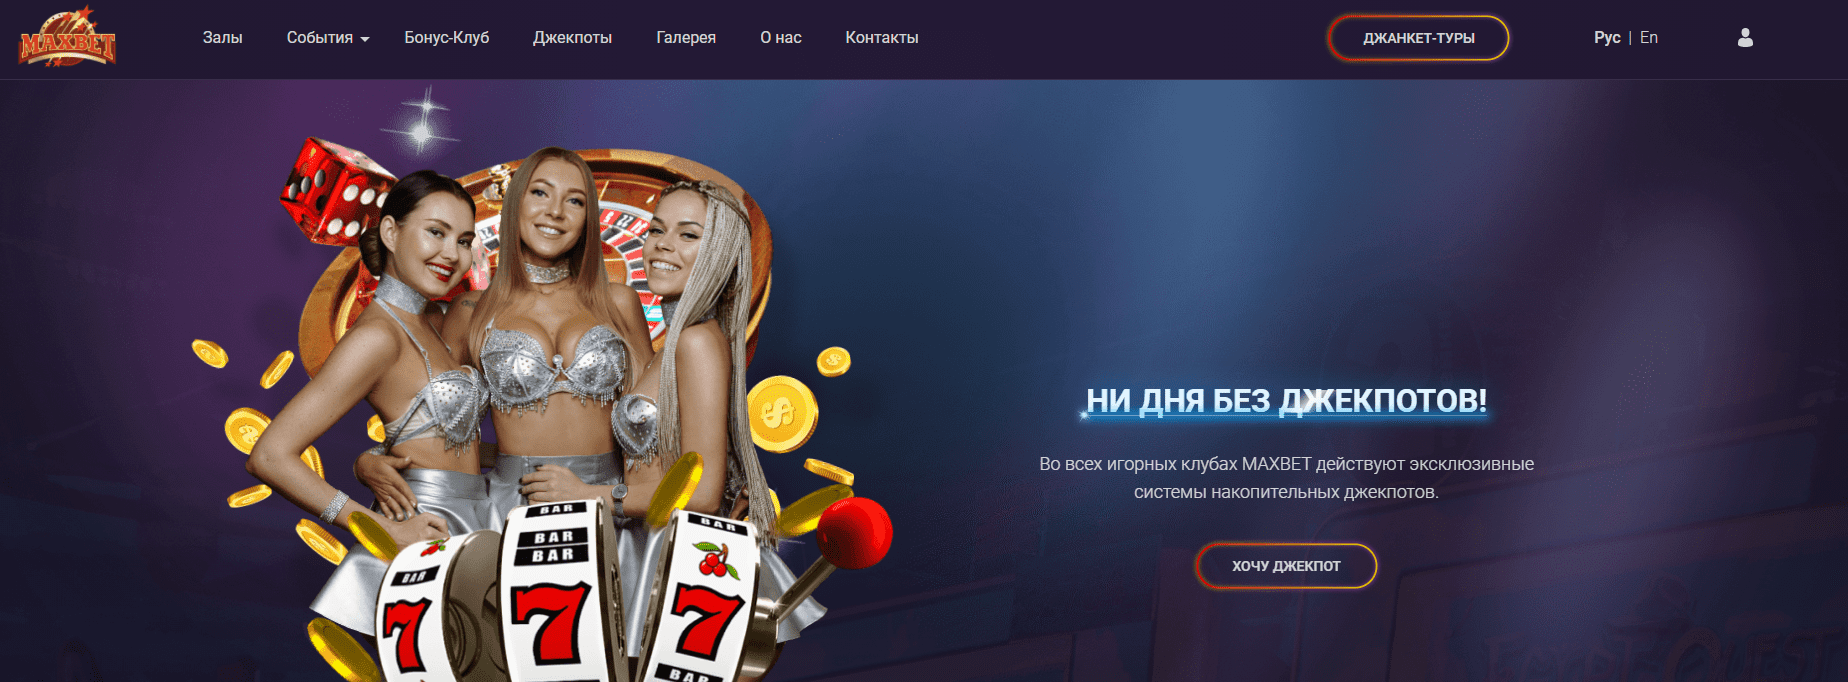 Действующие промокоды в максбет игровые автоматы онлайн казино гейминатор